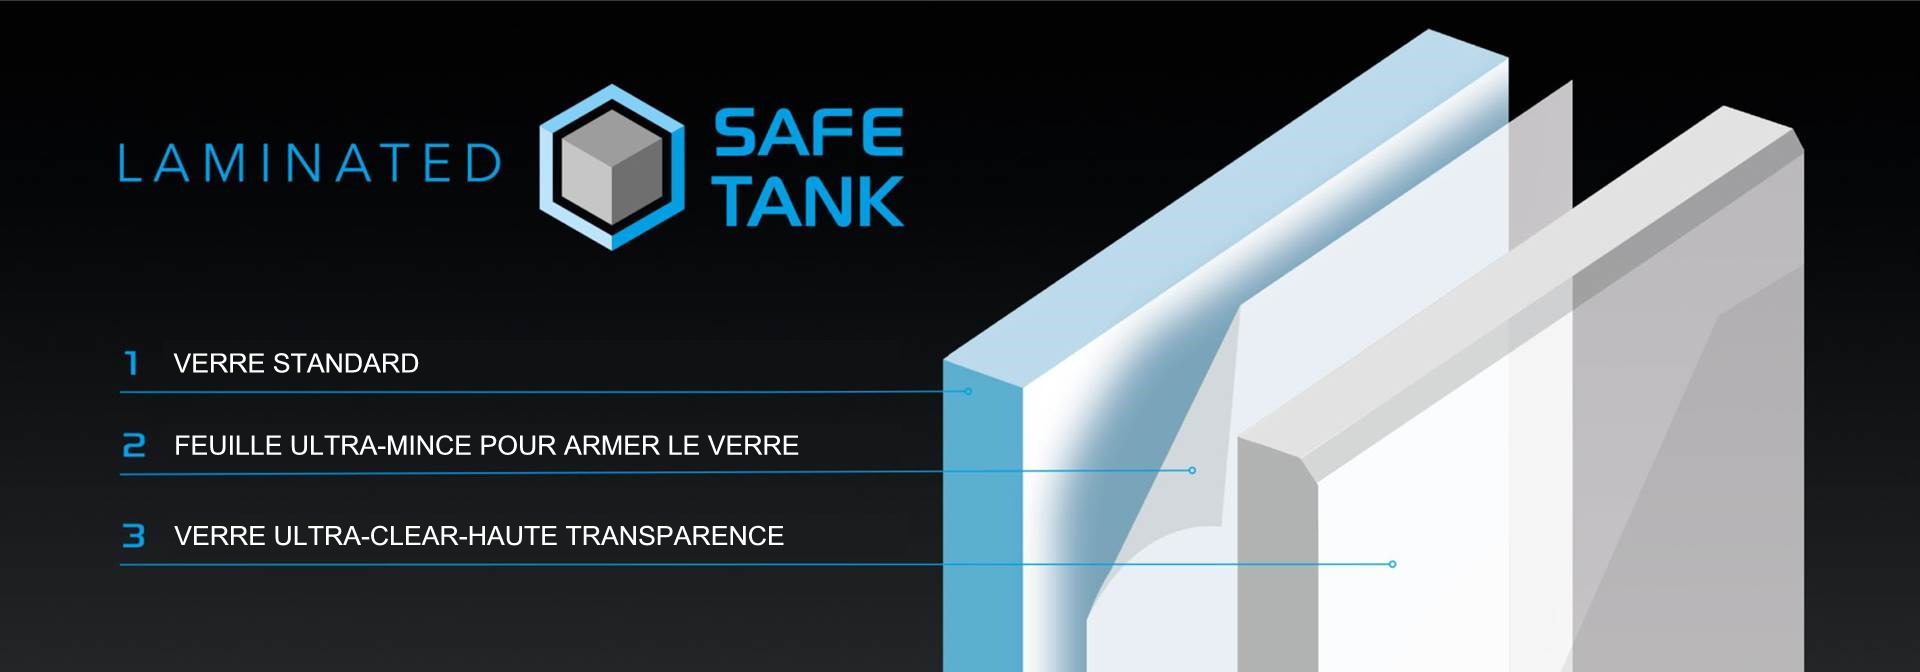 nouveau-verre glossy-safe-tank